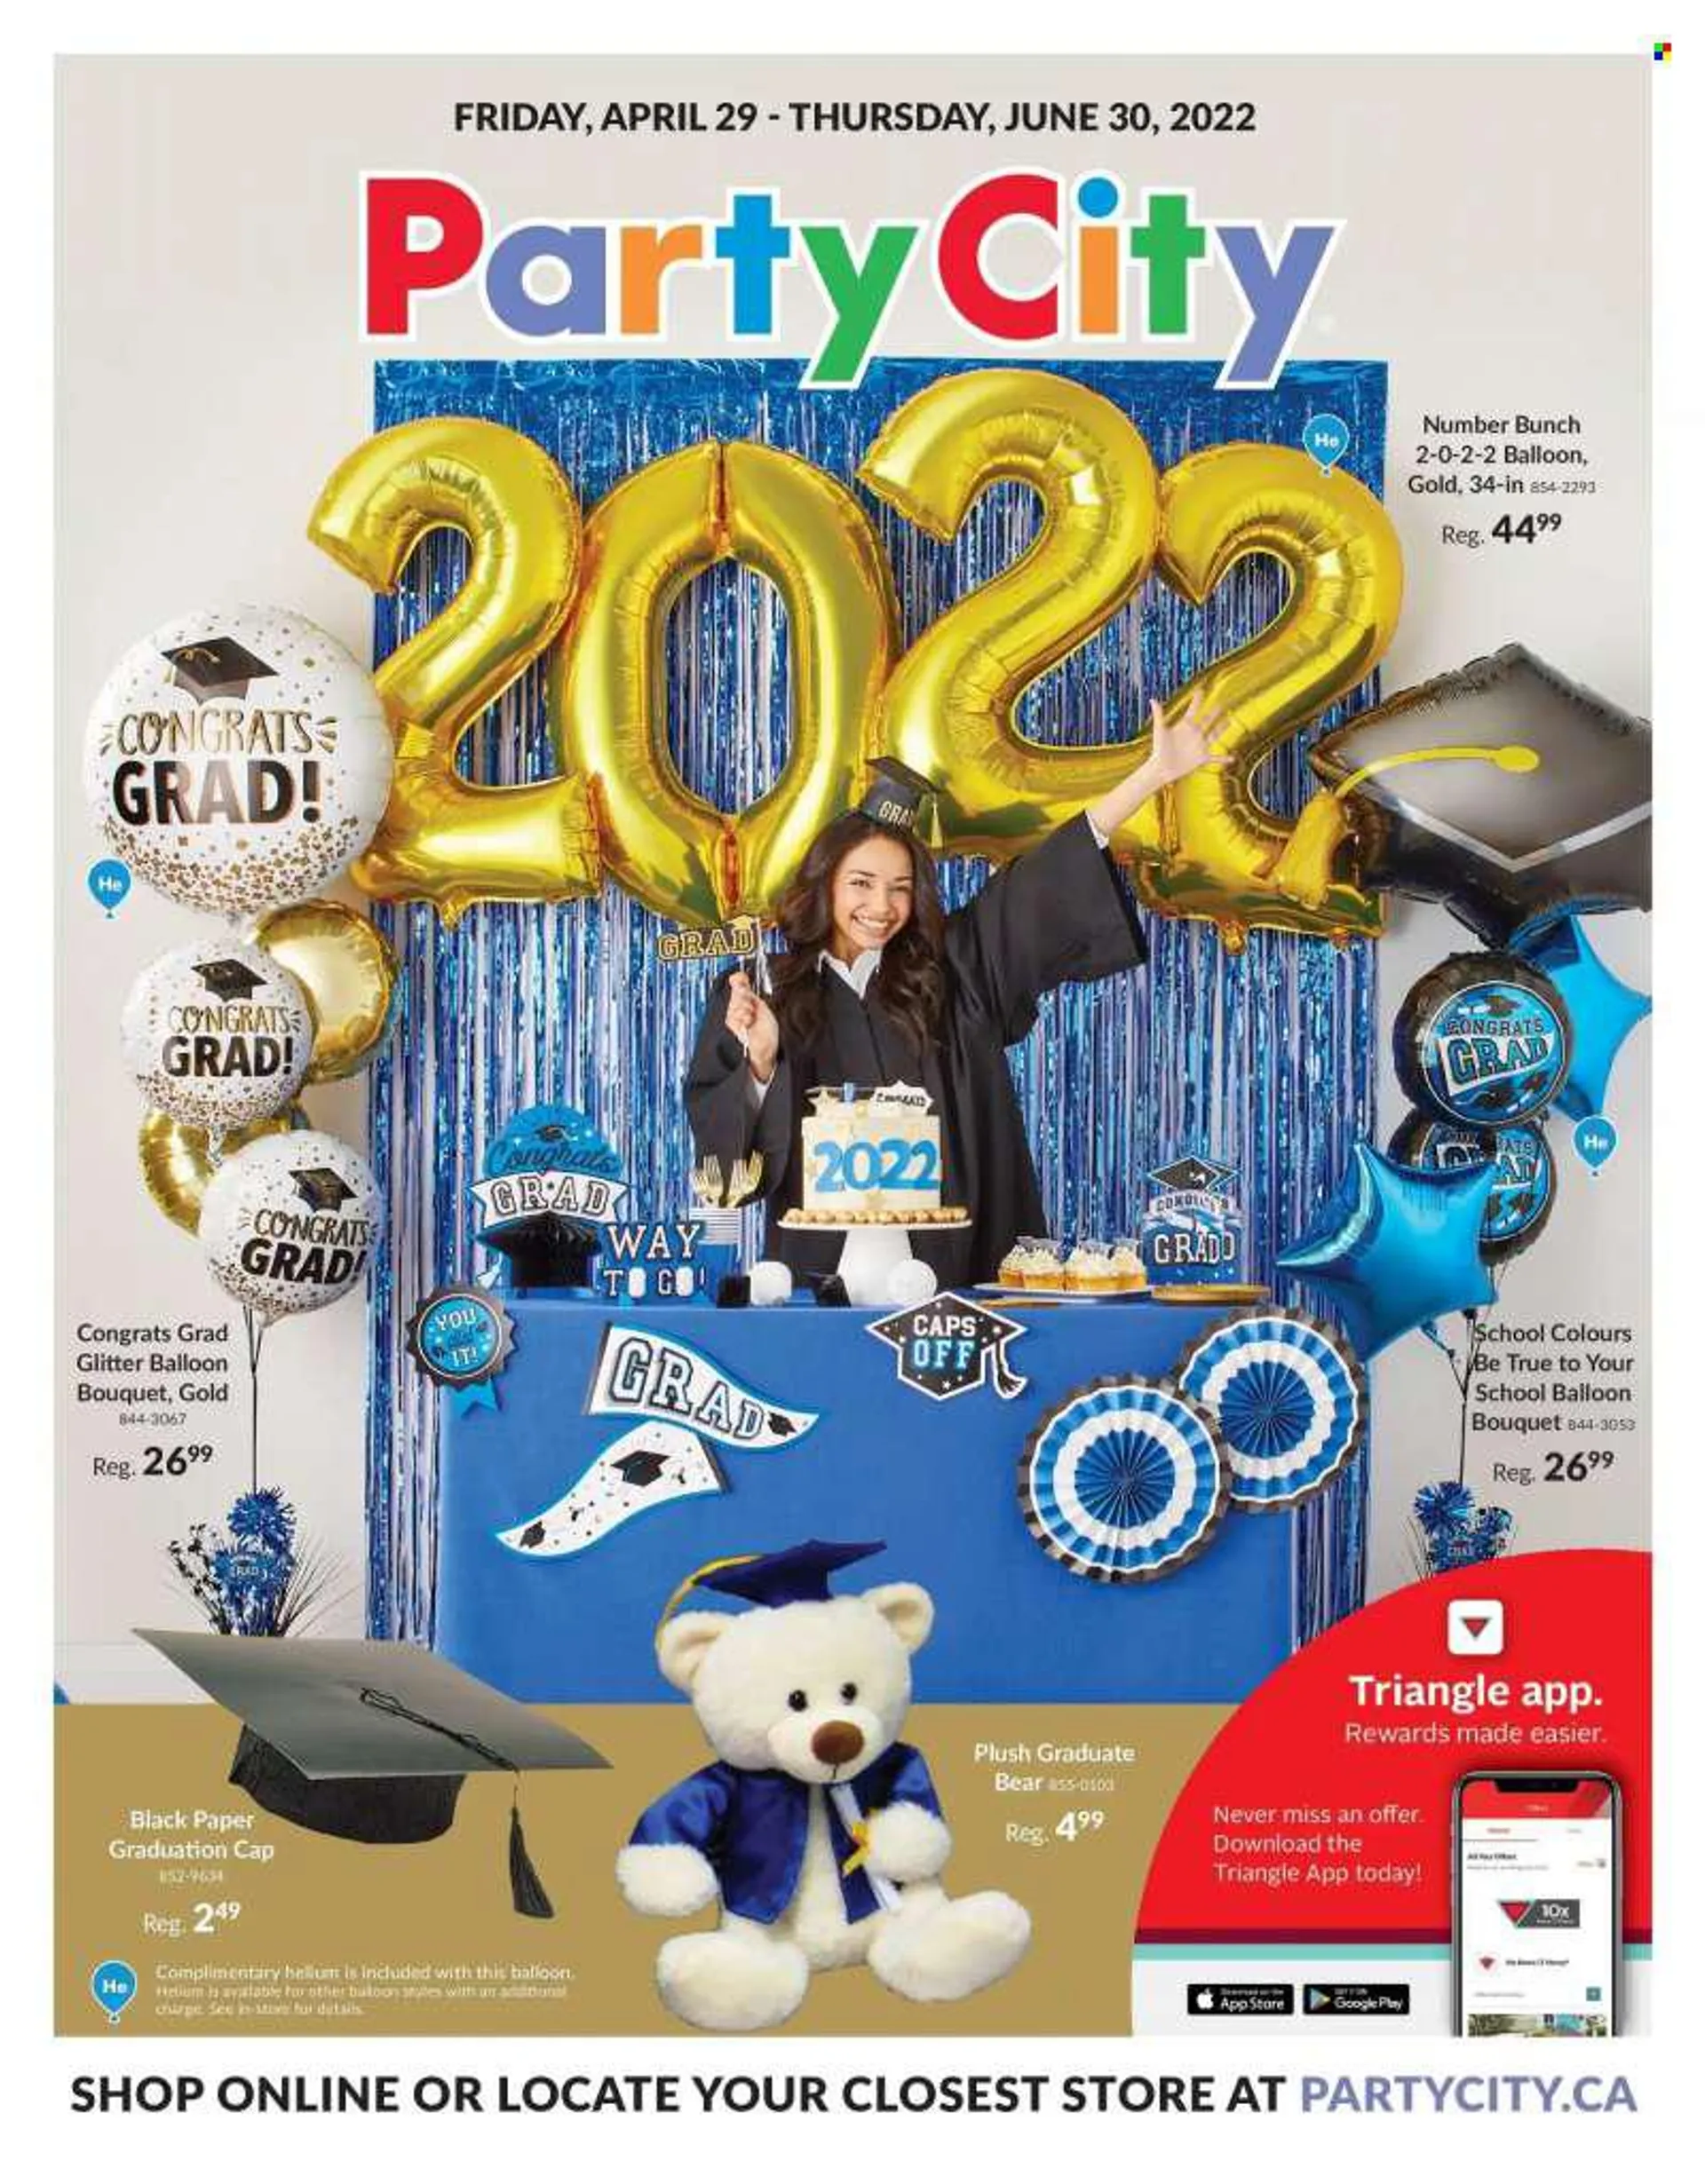 Party City Flyer - April 29, 2022 - June 30, 2022.